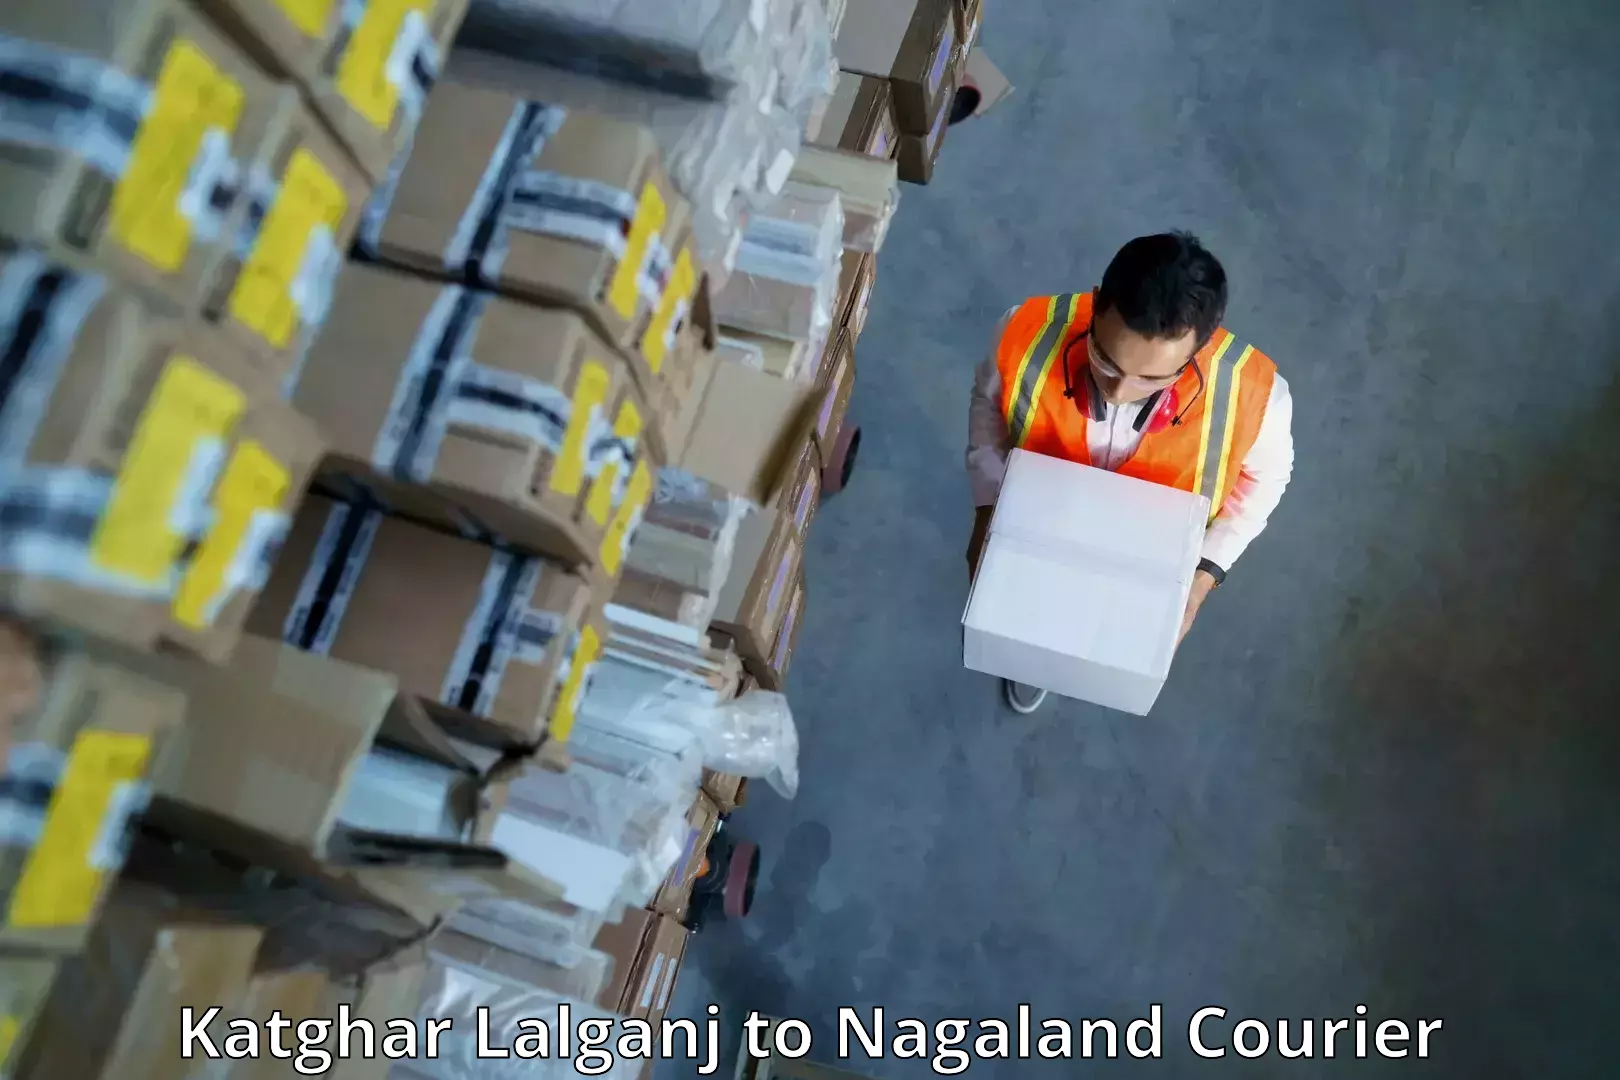 Express logistics service Katghar Lalganj to Nagaland